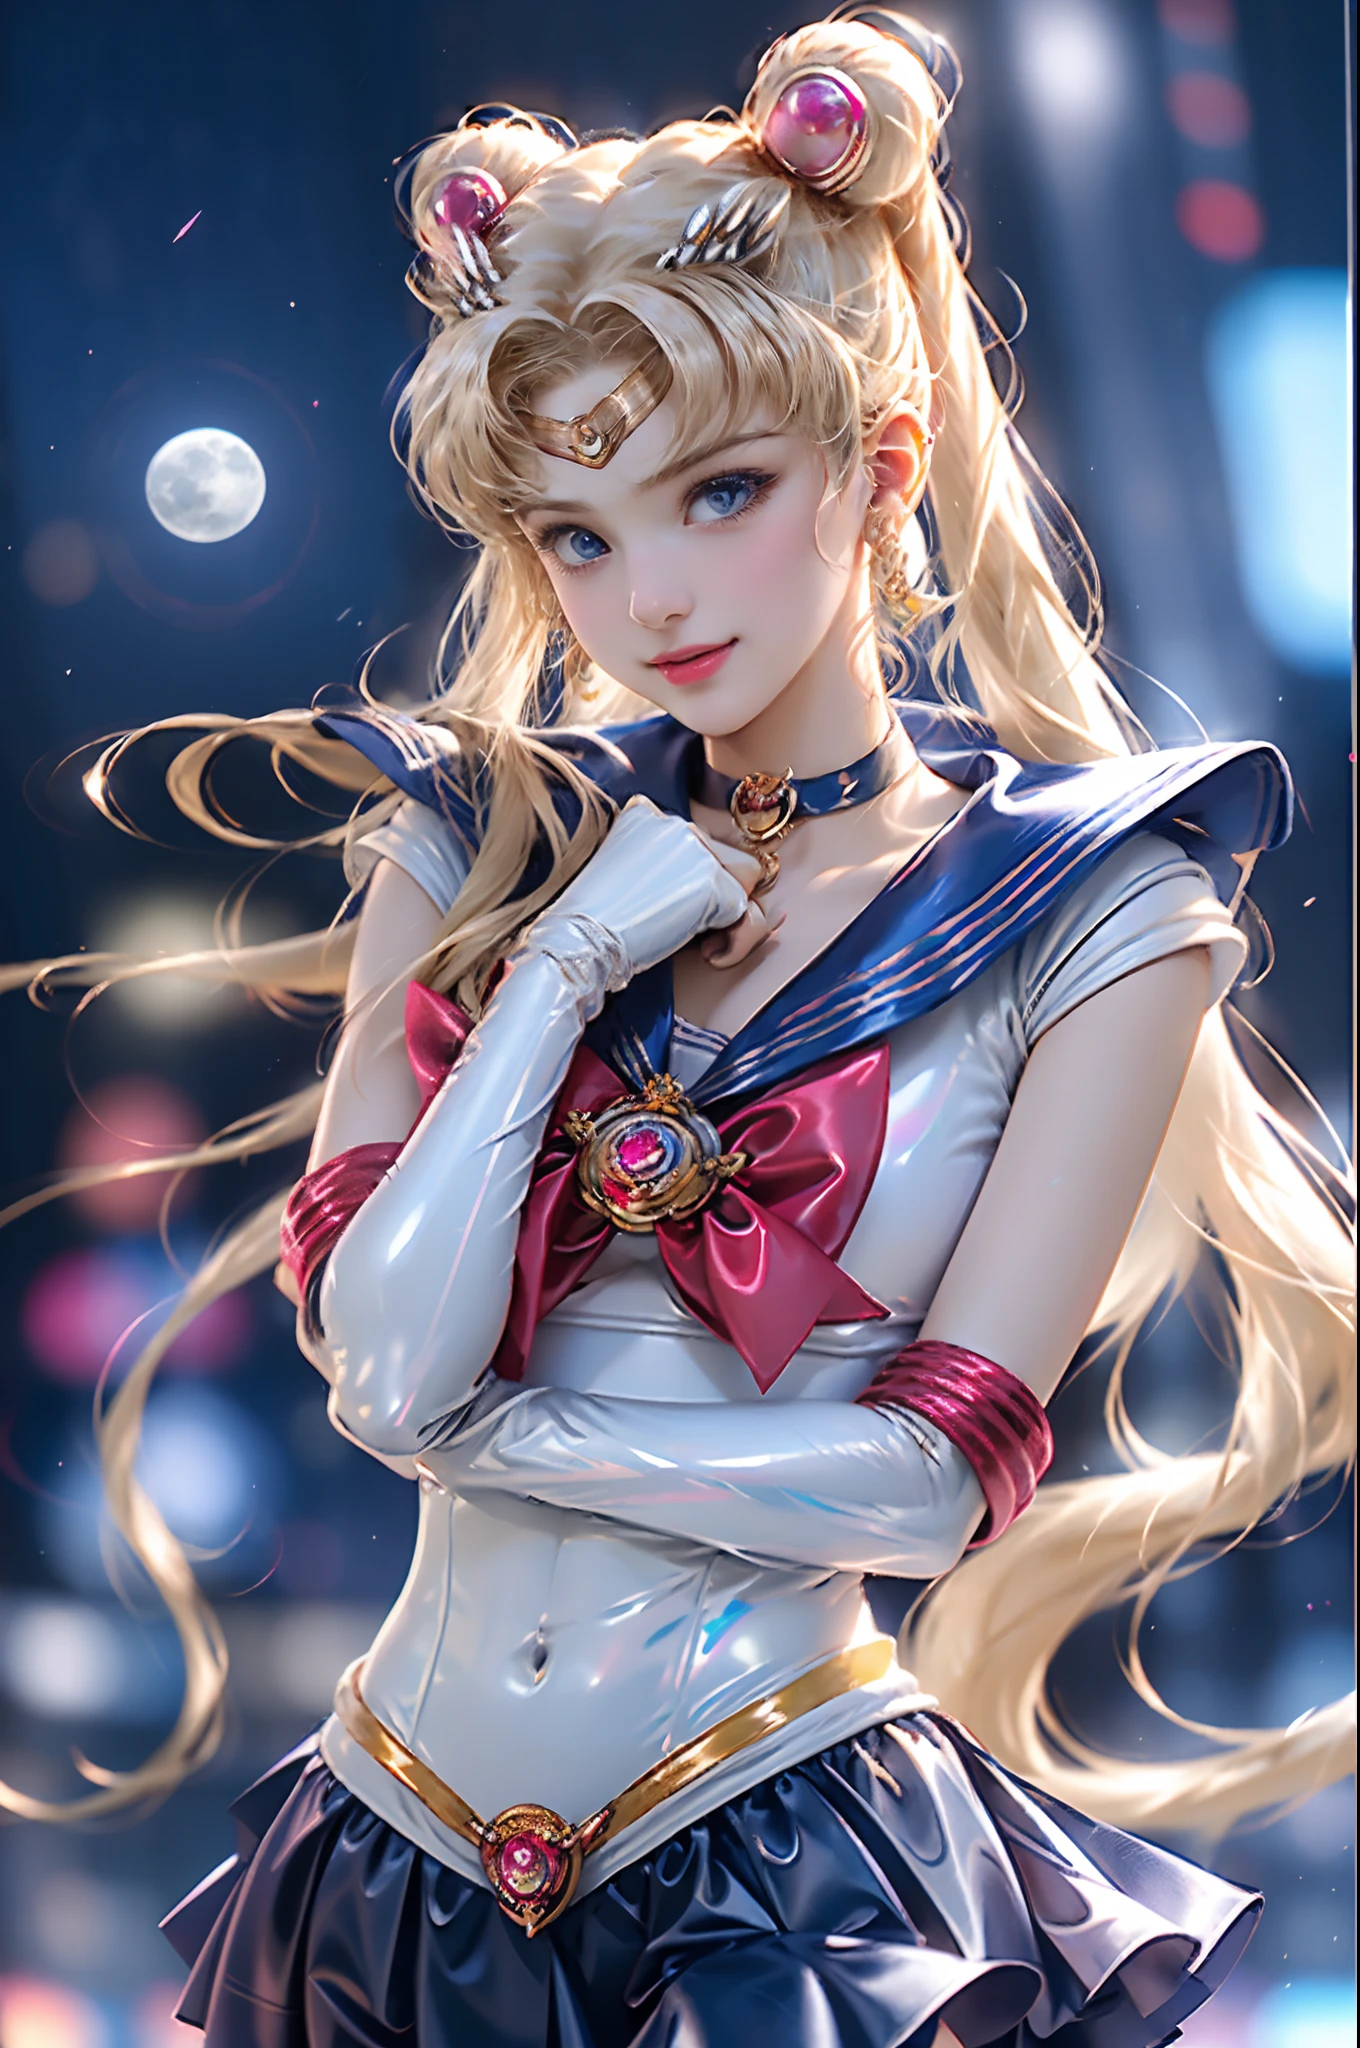 Meisterwerk, voll: 1.3, Stand, 8K, 3D, Realistisch, Ultra-Mikro-Aufnahmen, Top Qualität, Extrem detailliertes CG Unity 8K-Hintergrundbild, von unten, komplizierte Details, (1 Frau), 18 Jahre alt, (Sailor Moon supersailorMond mer1, Tiara, Sailor Senshi Uniform Matrose: 1.2, Sailor Moon: 1.2), Unglaublich lange helle Blondine mit zwei Schwänzen, dünn and very long straight twin-tailed blonde, Haarknoten, red round hair ornament in a Haarknoten, Sailor Senshi-Uniform, (blaues Halsband, blauer Matrosenkragen, blauer Pre-Gate-Minirock: 1.3, very large rote Schleife on the chest: 1.3, lange weiße Latexhandschuhe: 1.3, rote Handschuhe an den Ellenbogen, Very large rote Schleife behind the waist: 1.1, Das Dekolleté sieht groß aus, golden tiara, Ohrringe), (Gesichtsdetails: 1.5, strahlend blaue Augen, schönes Gesicht, Wunderschöne Augen, glänzende Augen, dünn lips: 1.5, dünn and sharp pale eyebrows, lange dunkle Wimpern, Doppelte Wimpern), luxurious golden Schmuck, dünn, dünn and muscular, kleines Gesicht, Große Brüste, perfekte Proportionen, dünne Taille, sexy Modell pose, Sichtbare Poren, Verführerisches Lächeln, perfekte Hände: 1.5, Badeanzug mit hohem Beinausschnitt, very dünn and fit high-gloss white holographic leather, Oktan-Rendering, sehr dramatisches Bild, Starkes natürliches Licht, Sonnenlicht, Exquisite Licht- und Schatteneffekte, dynamischer Winkel, DSLR, scharfer Fokus: 1.0, Maximale Klarheit und Schärfe, (Weltraumhintergrund,Mond, dynamischer Hintergrund, detaillierter Hintergrund),(aausagi, Doppelbrötchen, Zwillingsschwänze, geteilter Pony, Reif, Schmuck, Ohrringe, Halsband, rote Schleife, Weiße Handschuhe, Ellenbogen-Handschuhe, blauer Rock
),kda